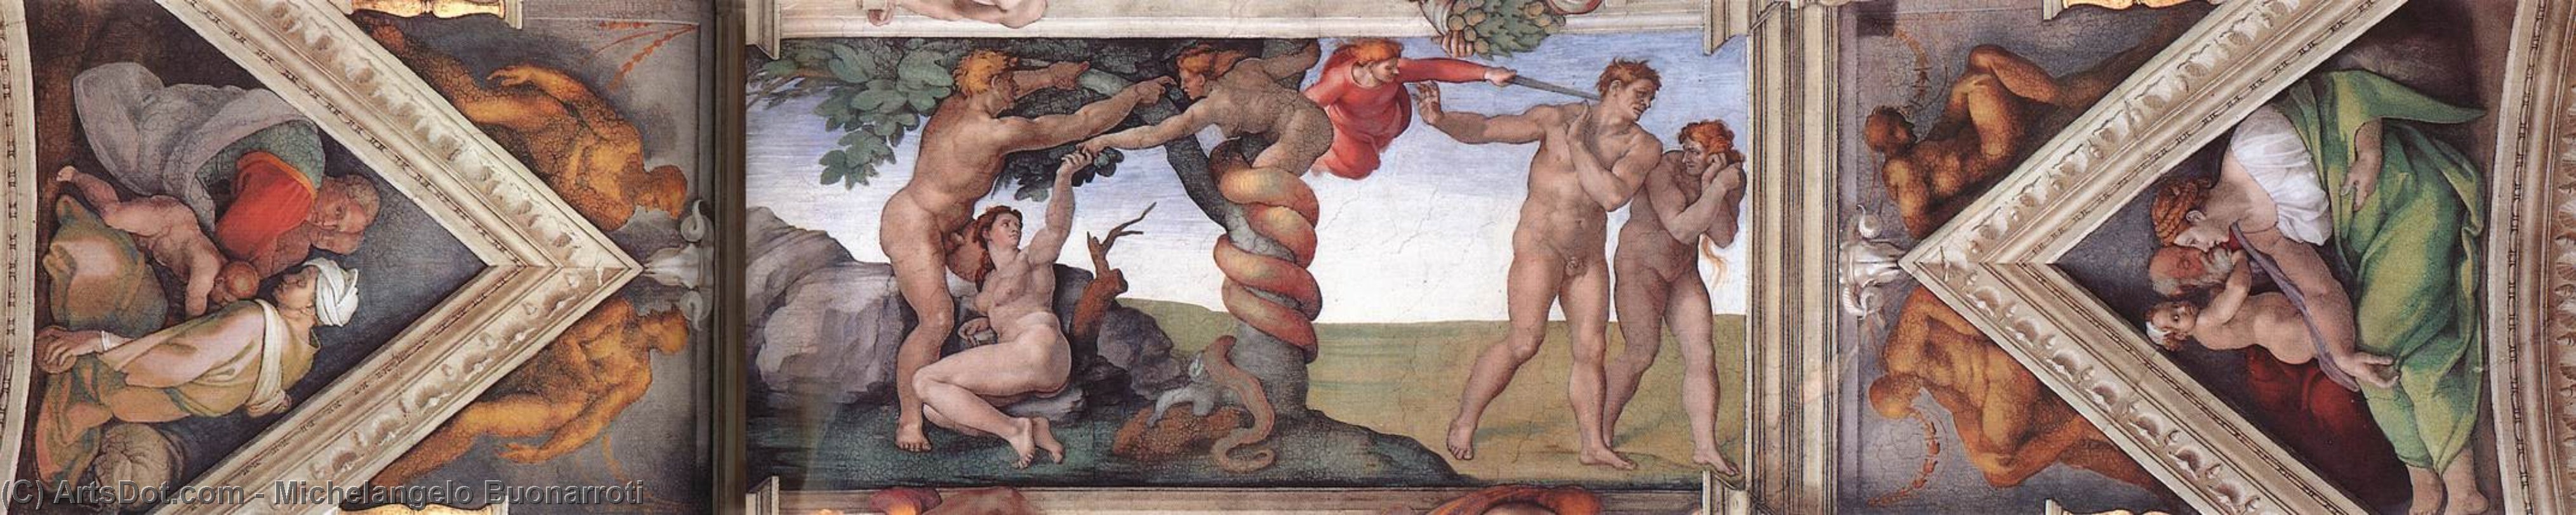 WikiOO.org - Enciklopedija likovnih umjetnosti - Slikarstvo, umjetnička djela Michelangelo Buonarroti - The fourth bay of the ceiling